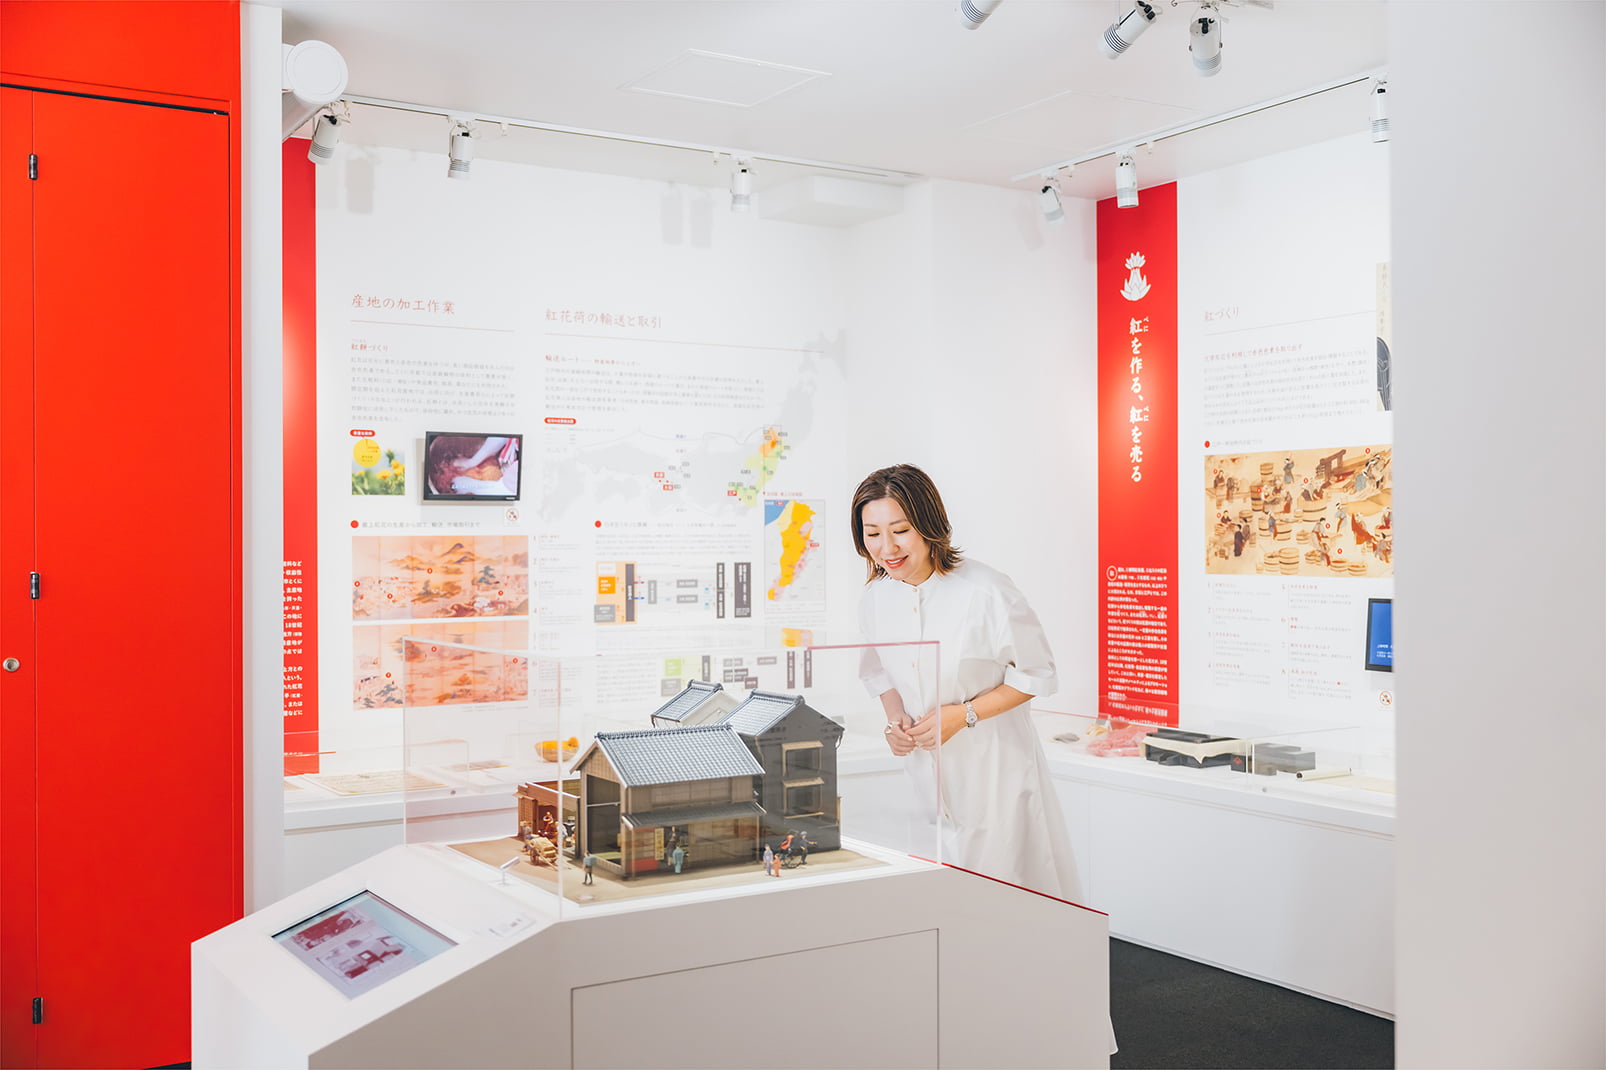 「紅ミュージアム」では、紅の歴史や伝統的な紅づくりの方法などが紹介されている。「紅花は私の出身地、山形県の花なので身近に感じます」と長井さん。ミュージアムでは、日本の化粧の歴史を振り返る展示も楽しめる。